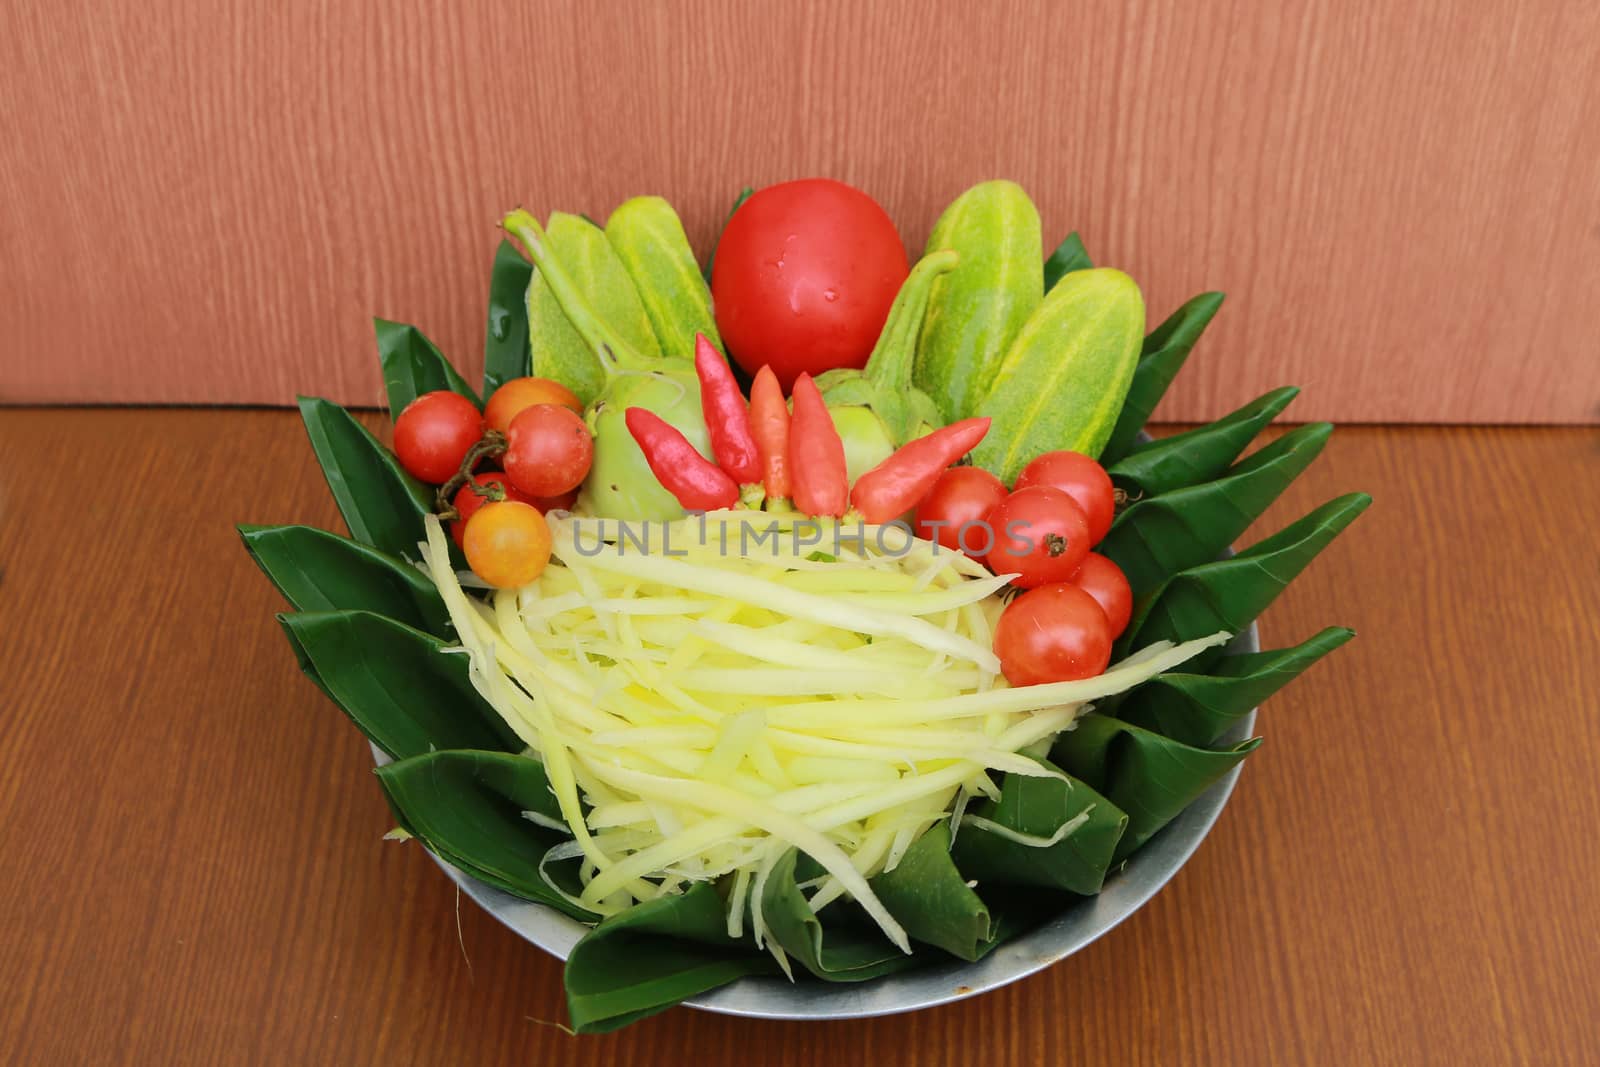 prepare set for papaya salad by kaidevil